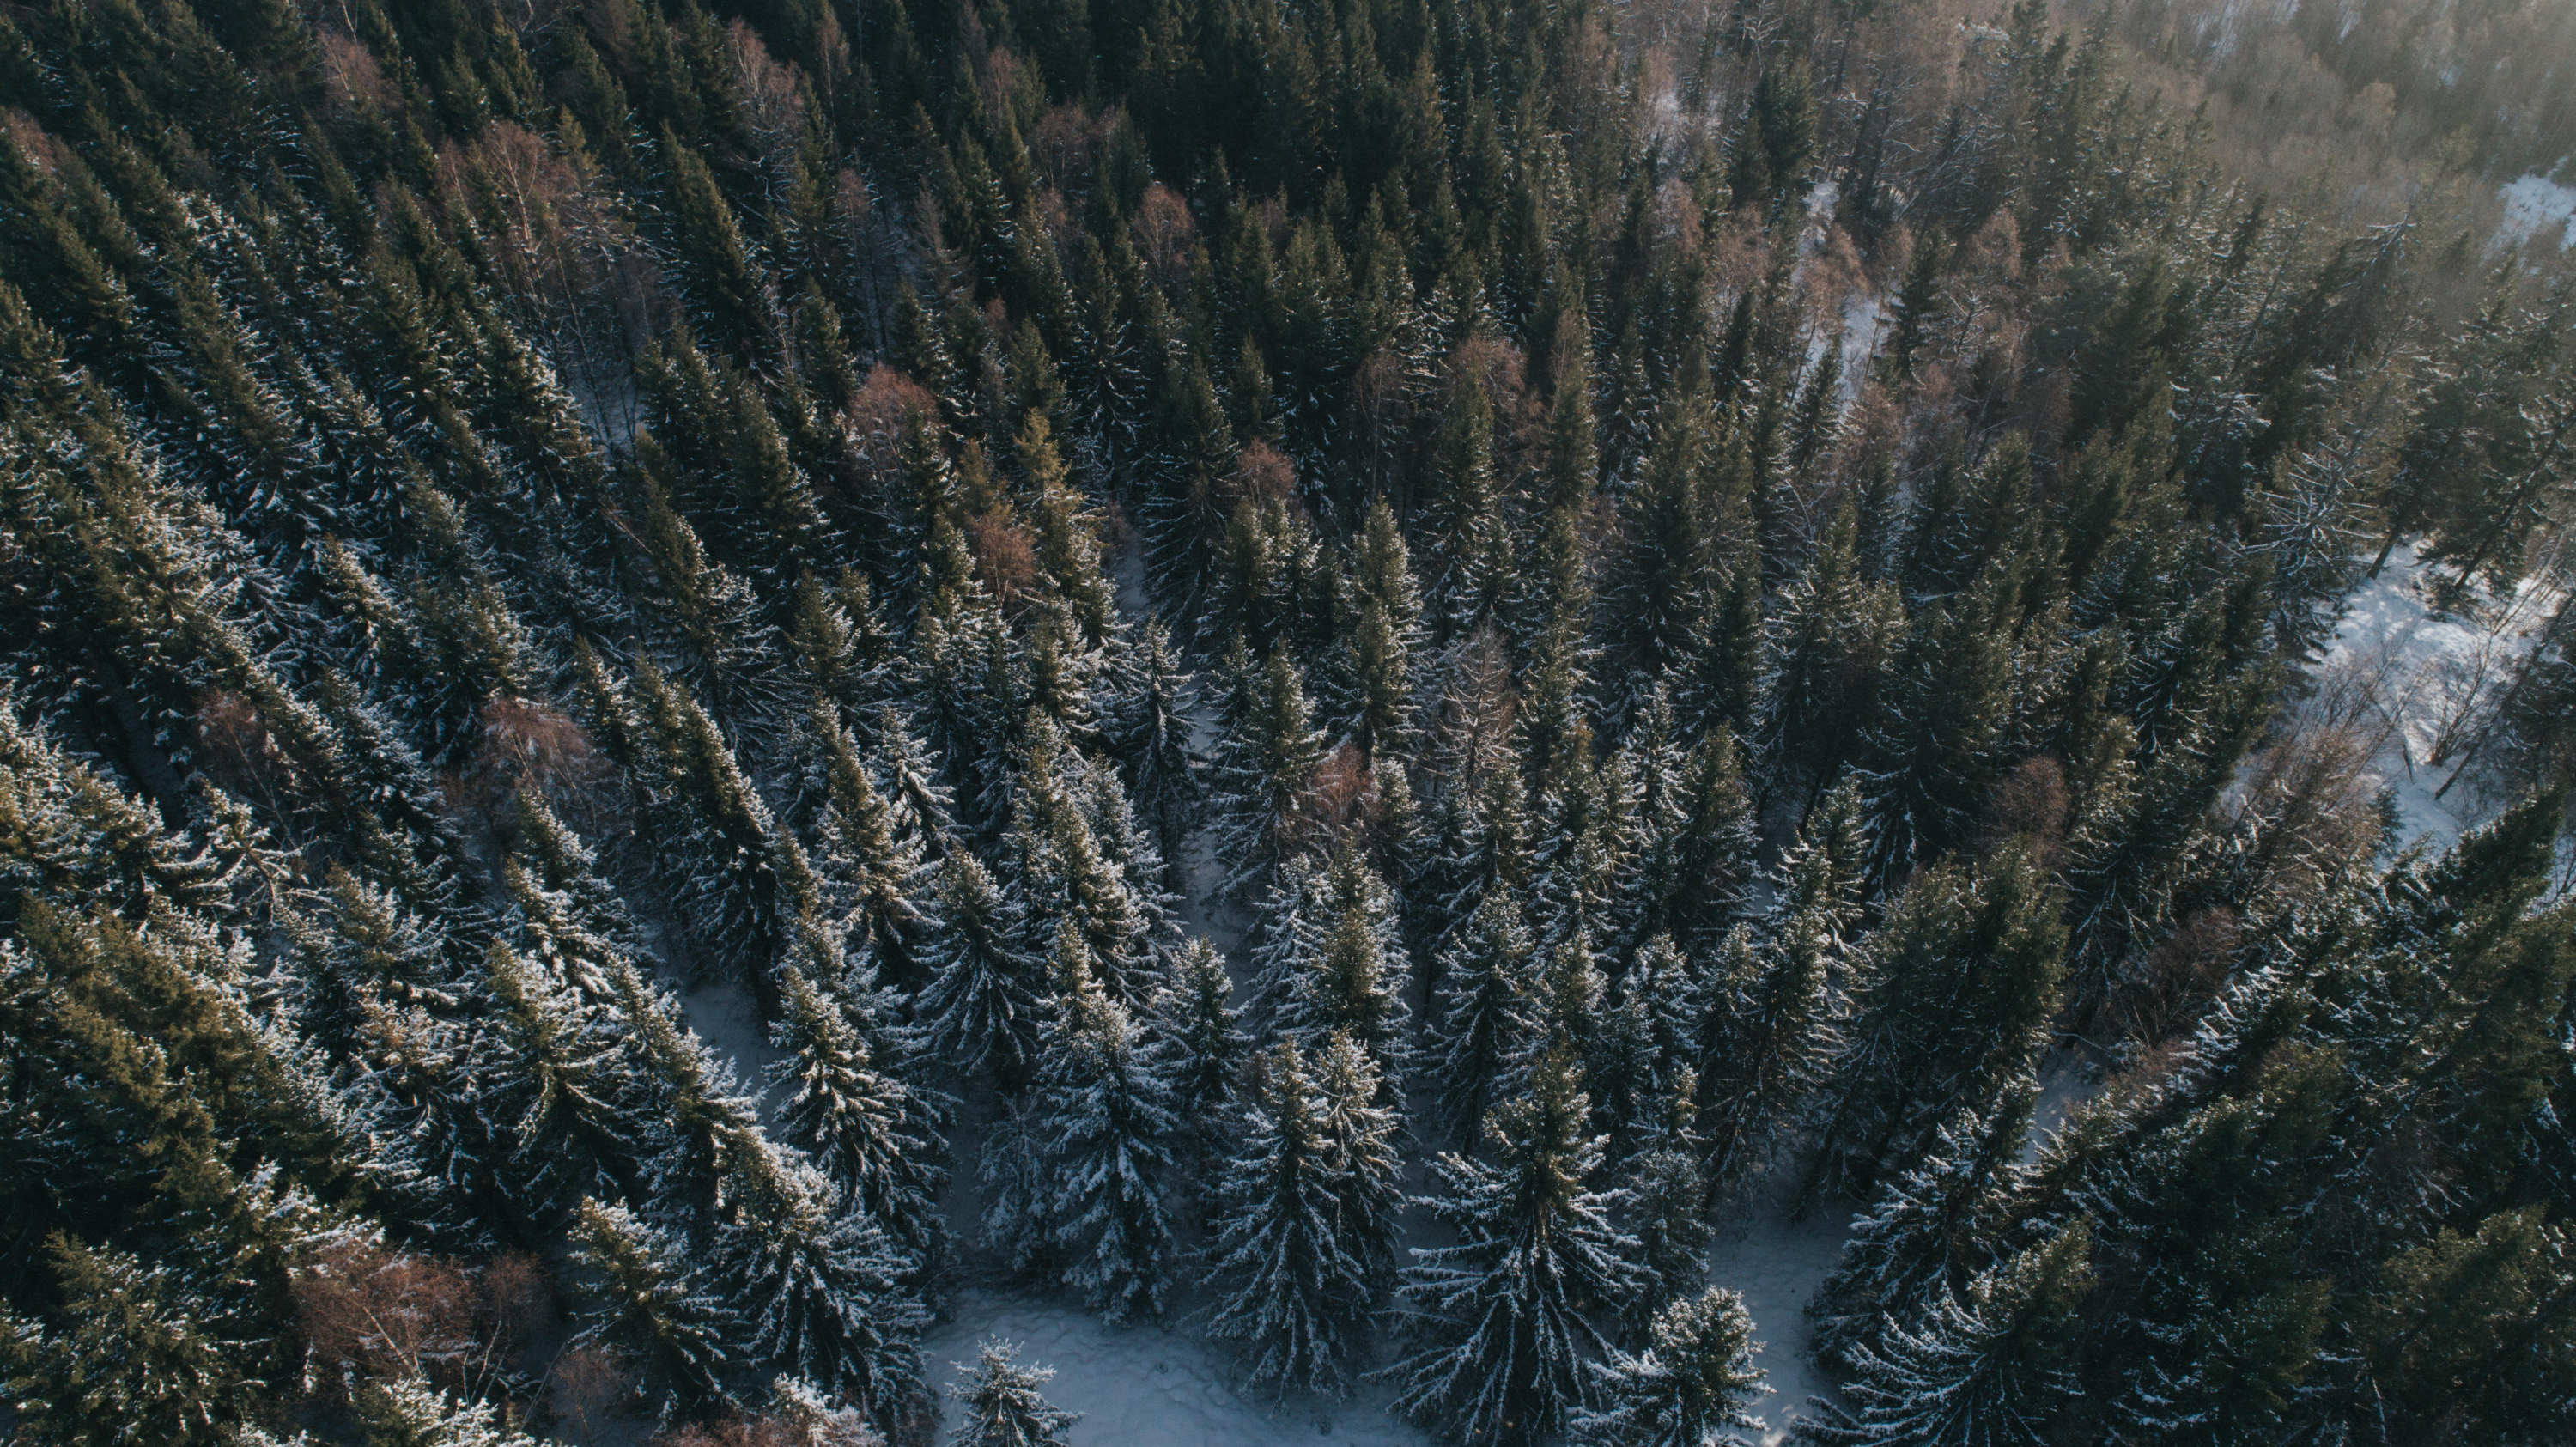 LITE SKADER I FJOR: Den norske skogen klarte seg godt gjennom 2020. Samtidig gir klimaendringene økt risiko for branner og andre skader i årene fremover. (Foto: Jørgen Nordby/Skogbrand)  